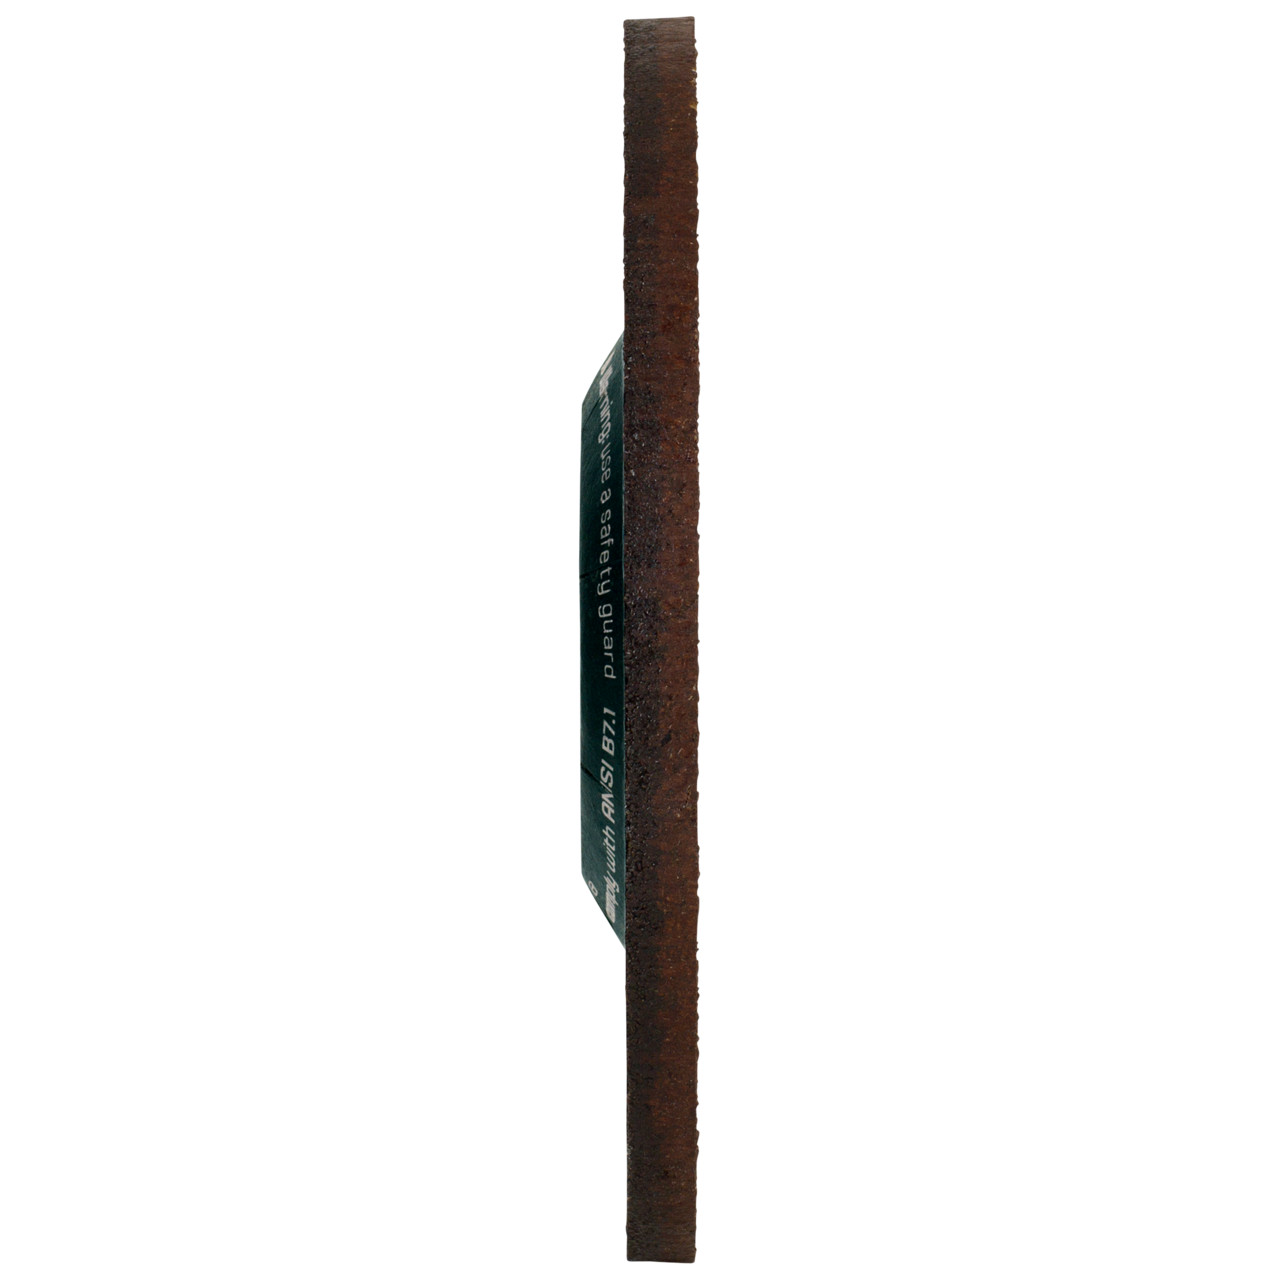 Tyrolit Voorslijpschijf DxUxH 150x4x22,23 CERABOND X voor staal en roestvast staal